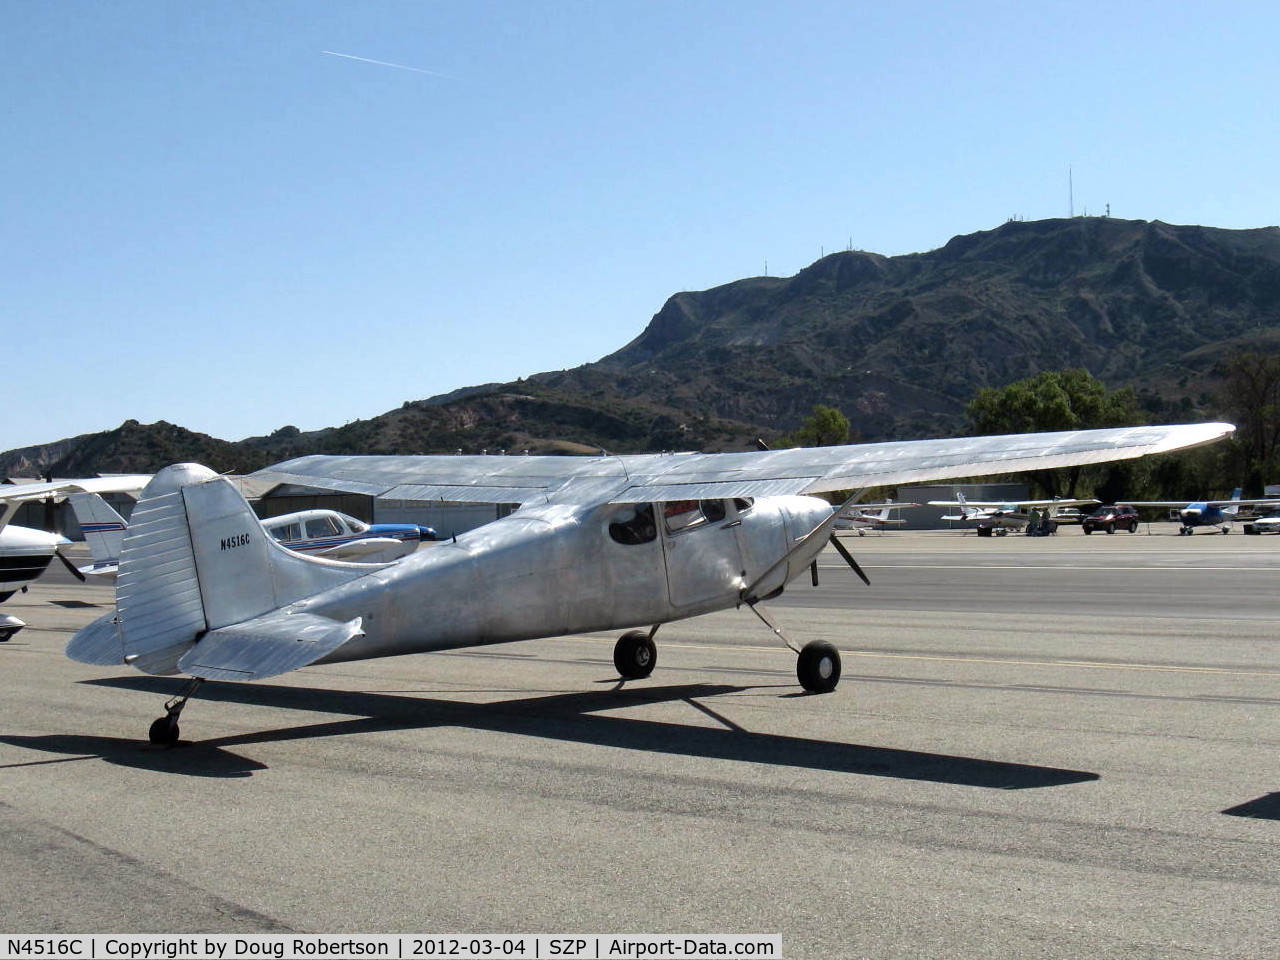 N4516C, 1952 Cessna 170B C/N 25460, 1952 Cessna 170B, Continental C-145-2 145 Hp, paint stripped